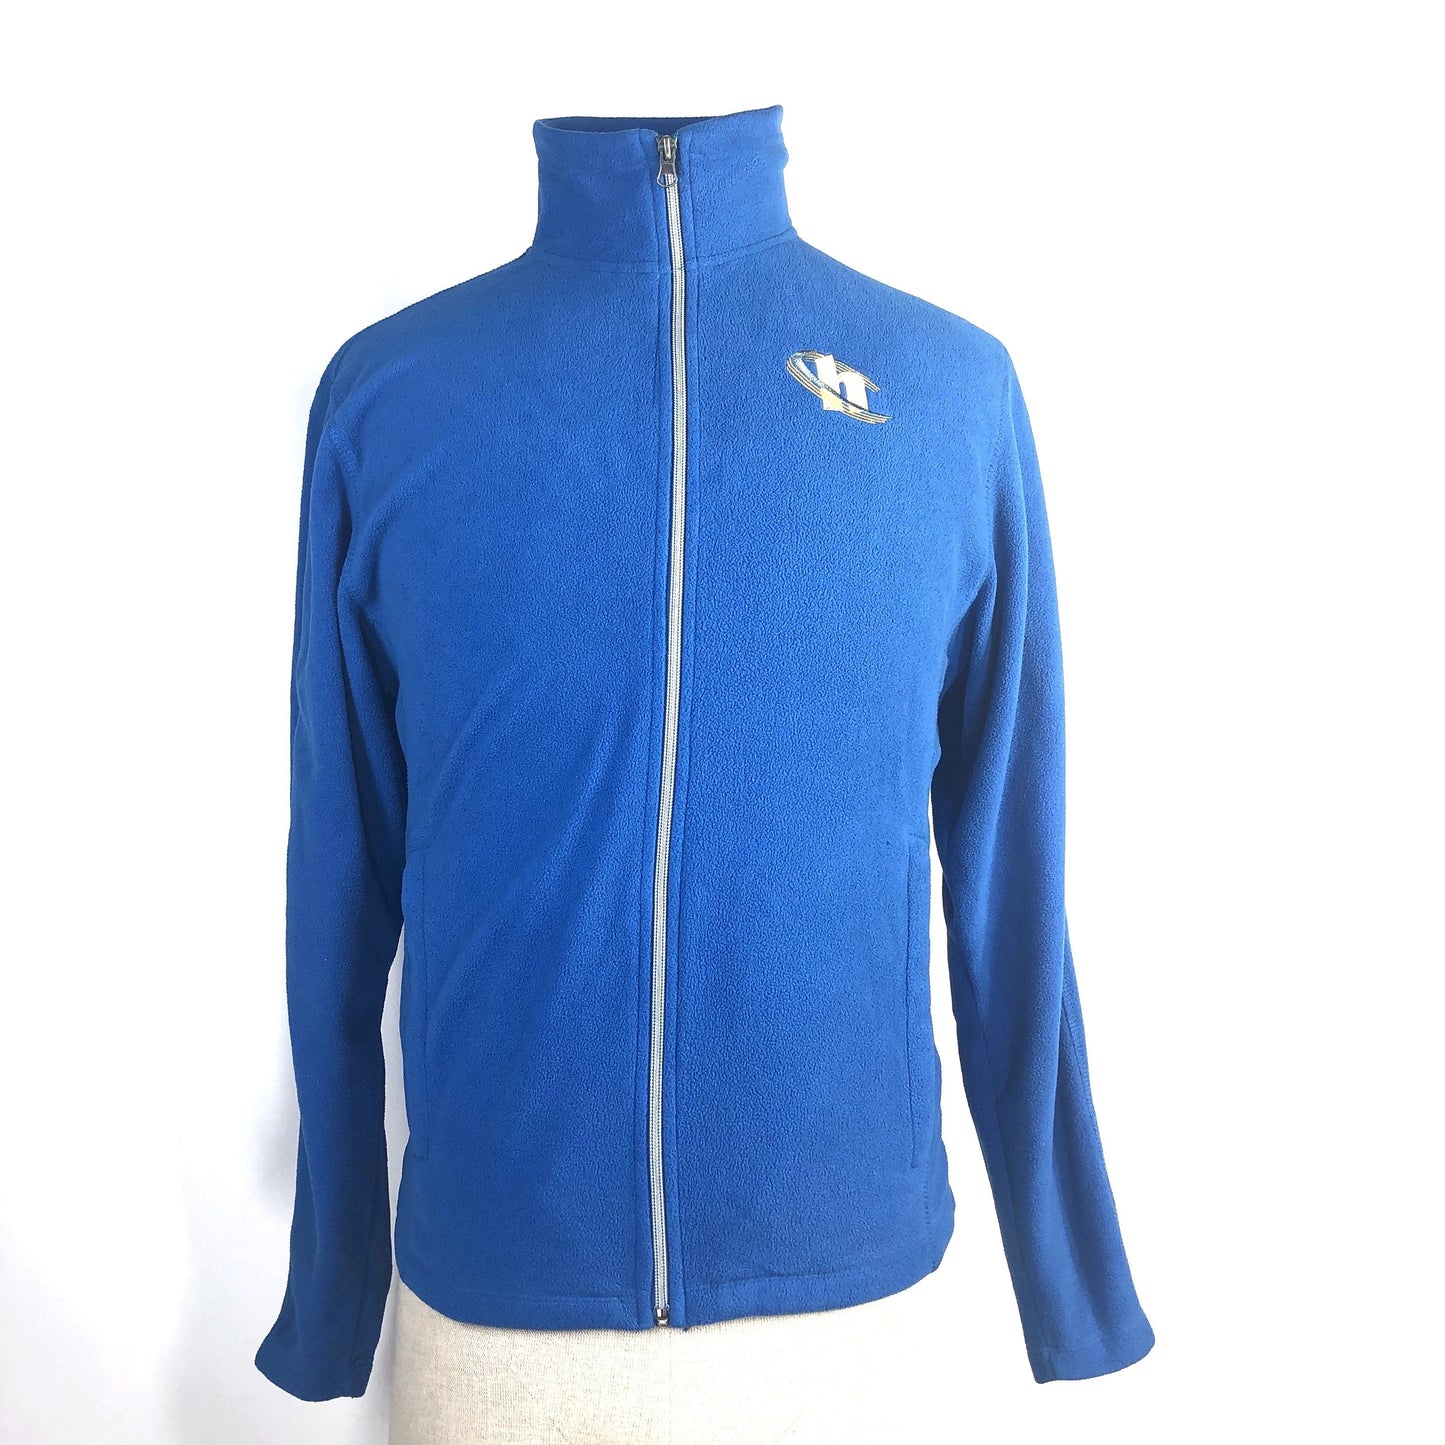 SILICON VALLEY: Blue Hooli Fleece Zip Up Jacket